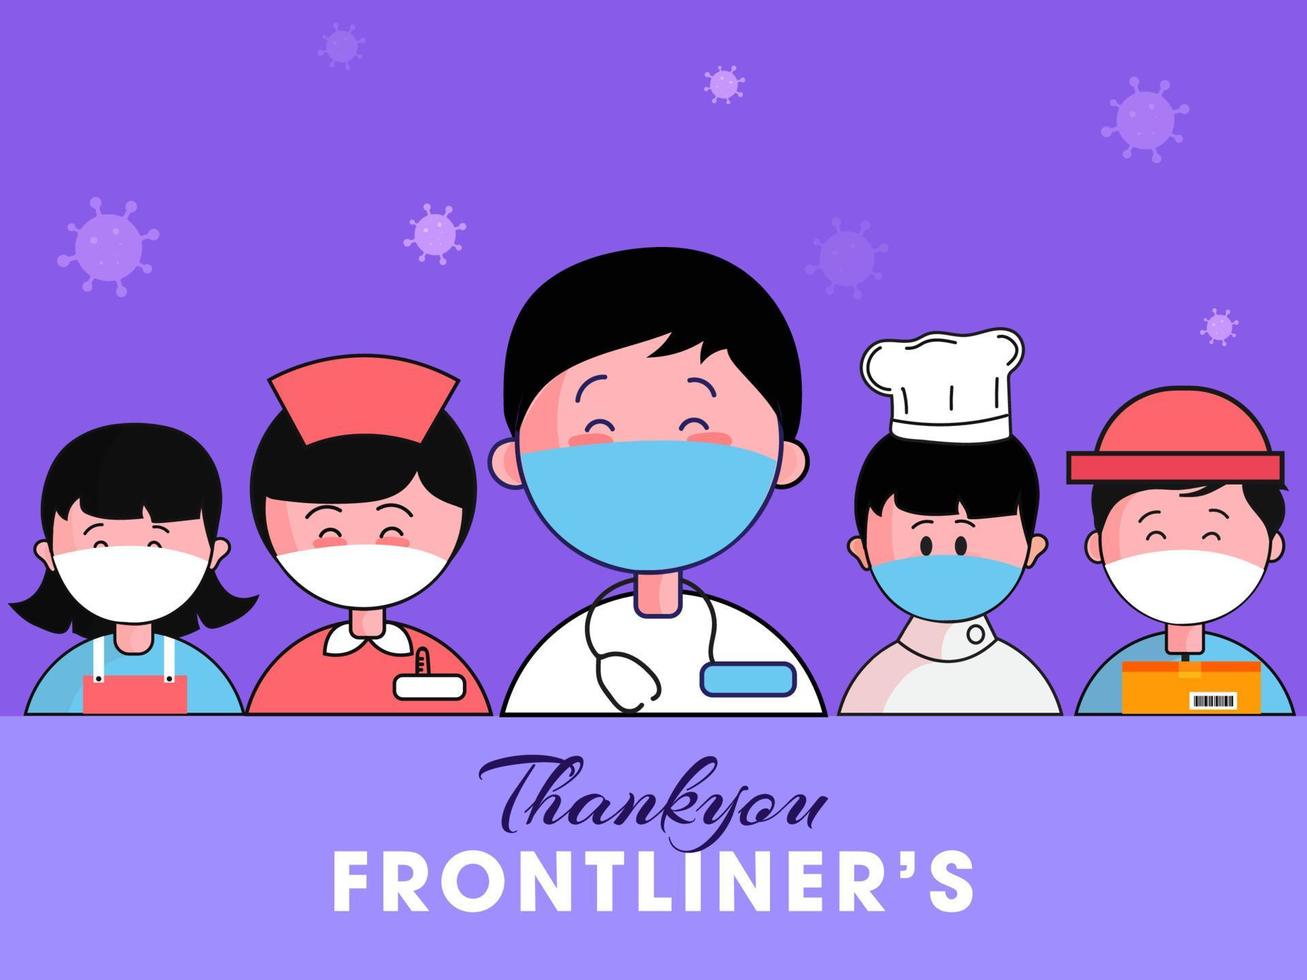 grazie voi frontliner chi opera per impedire coronavirus scoppio come come medico, infermiera e essenziale lavoratori. vettore